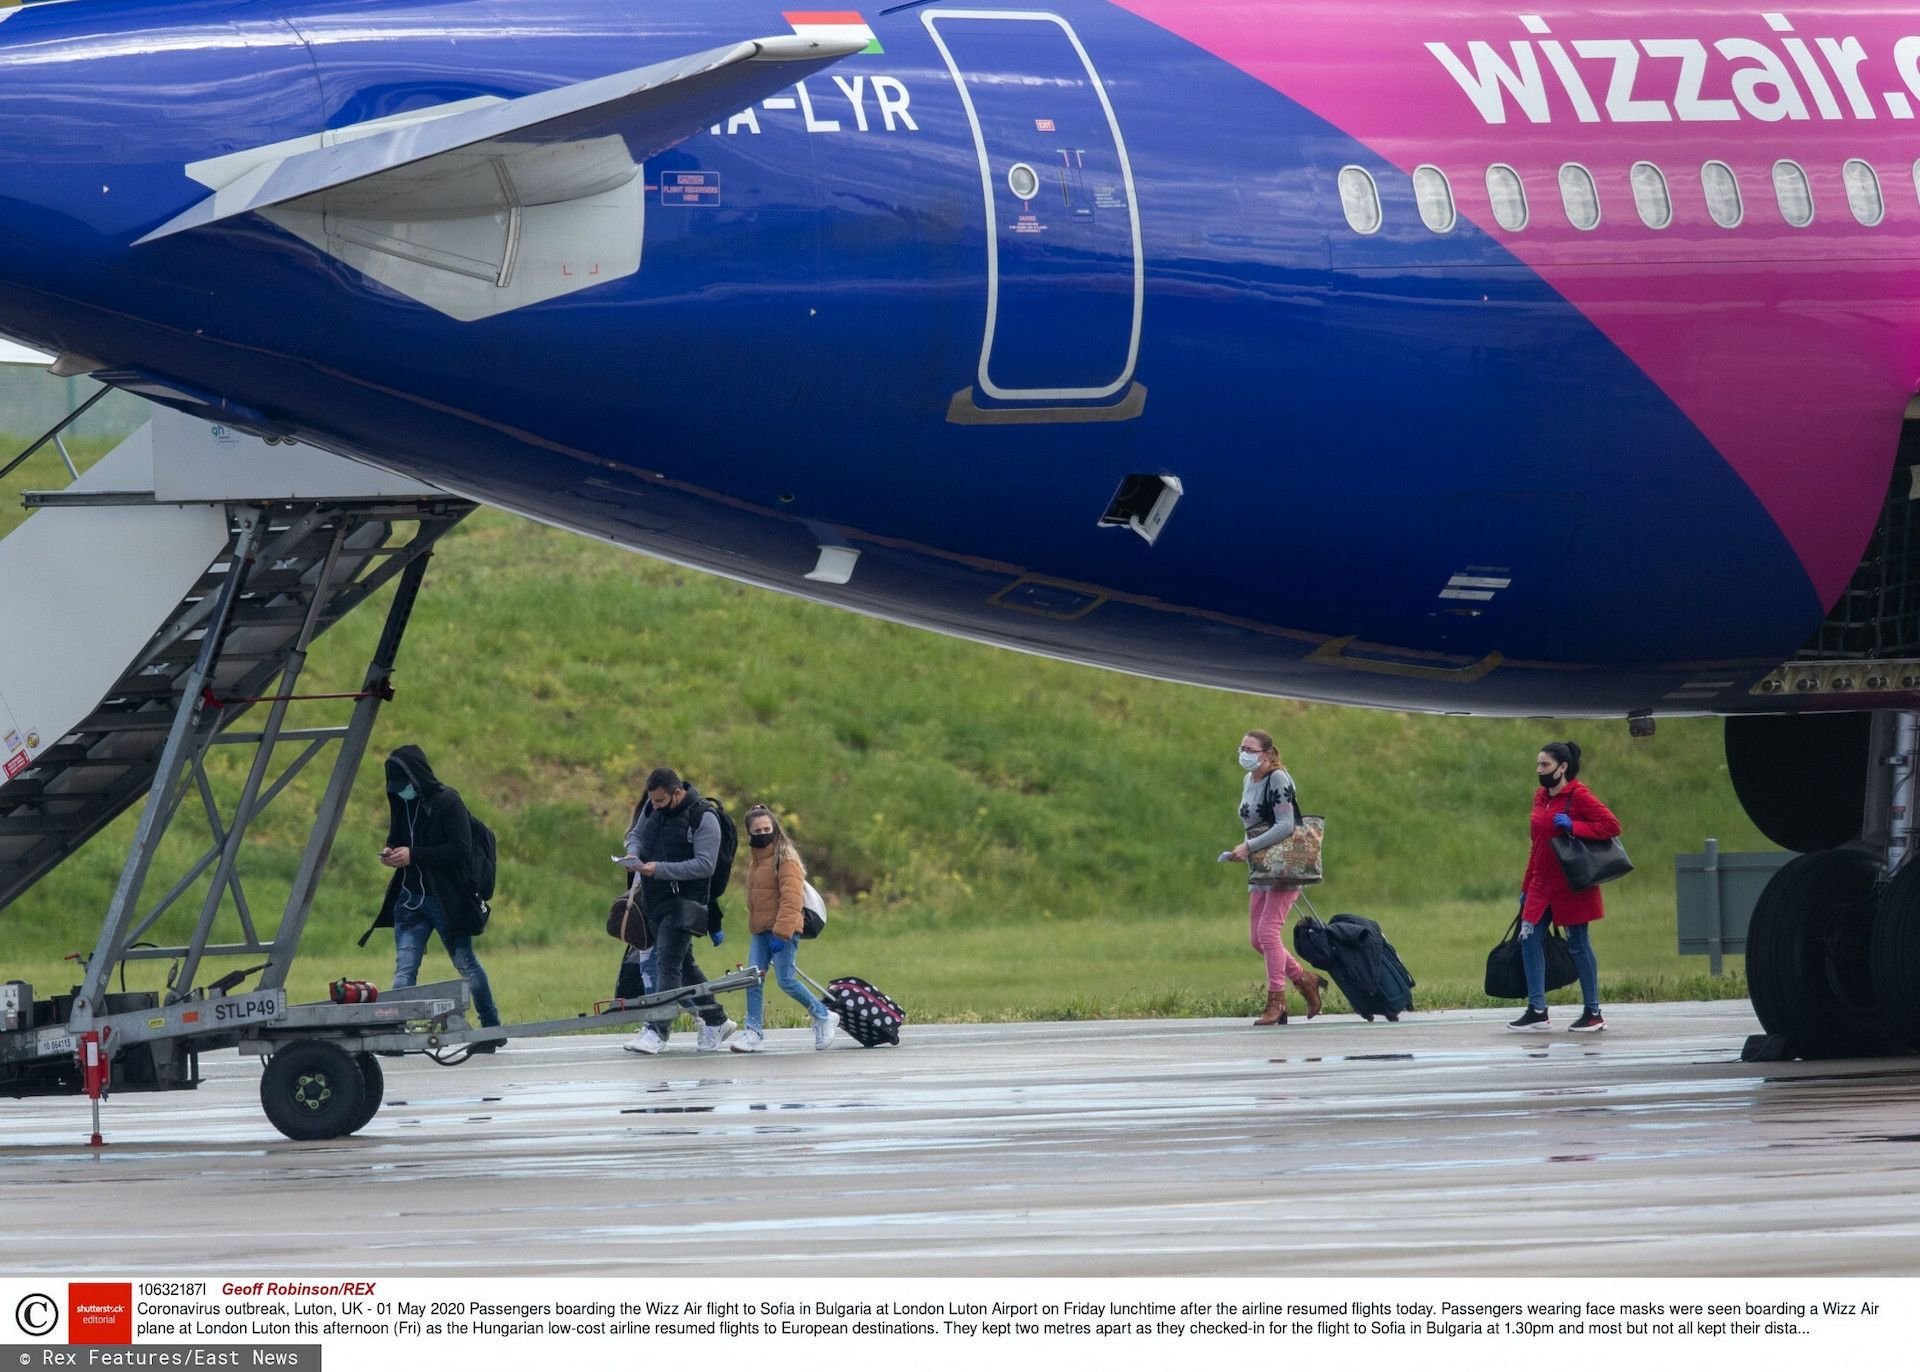 Samolot Wizz Air lecący do Warszawy lądował awaryjnie chwilę po starcie